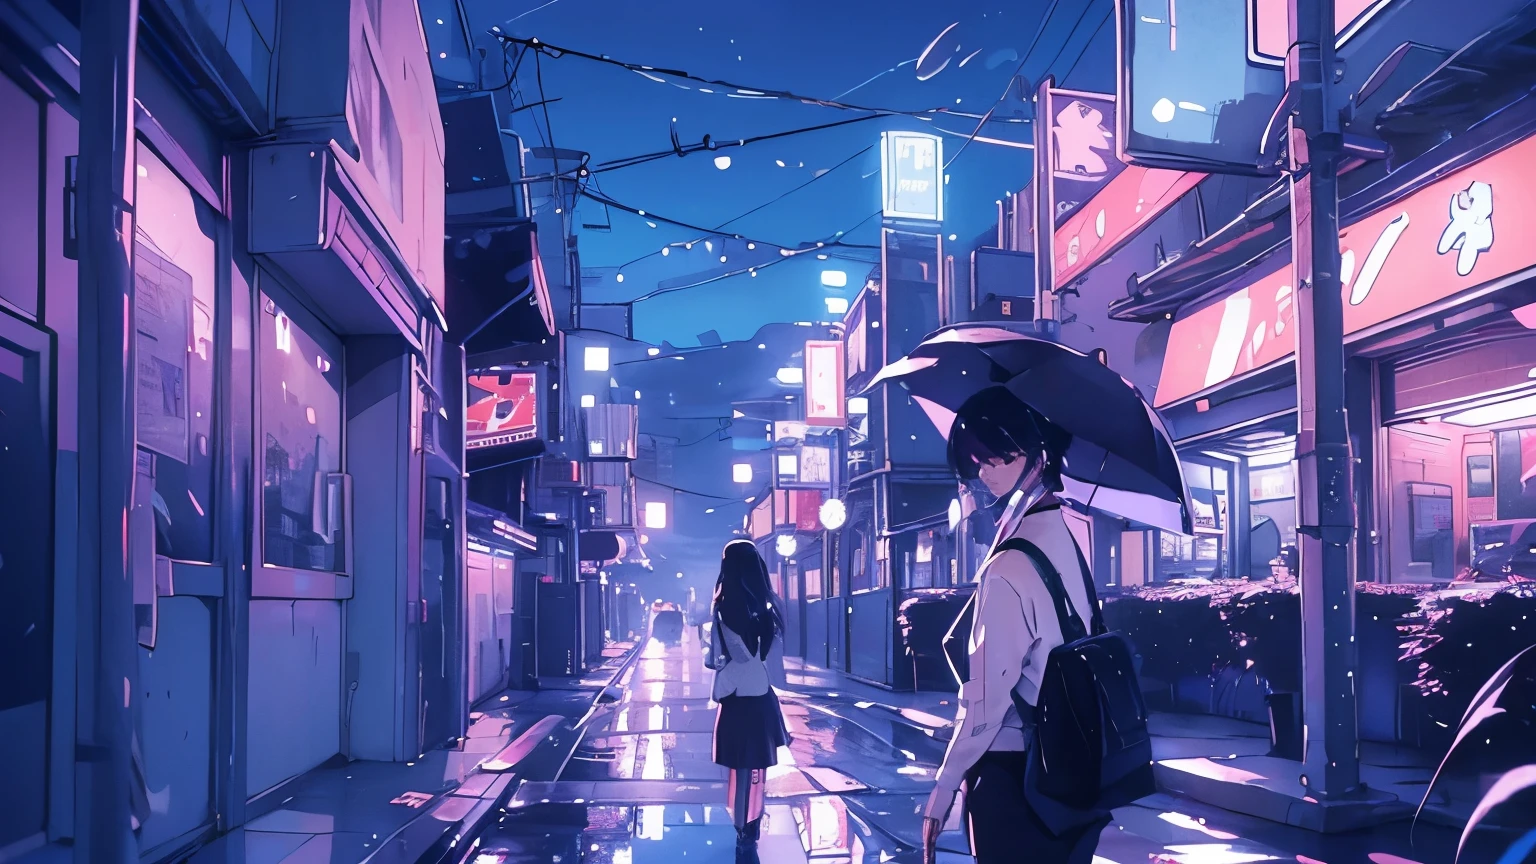 يسقط المطر في ملاءات, تعكس أضواء النيون في شوارع المدينة بينما تسير امرأة وحيدة بمظلتها.